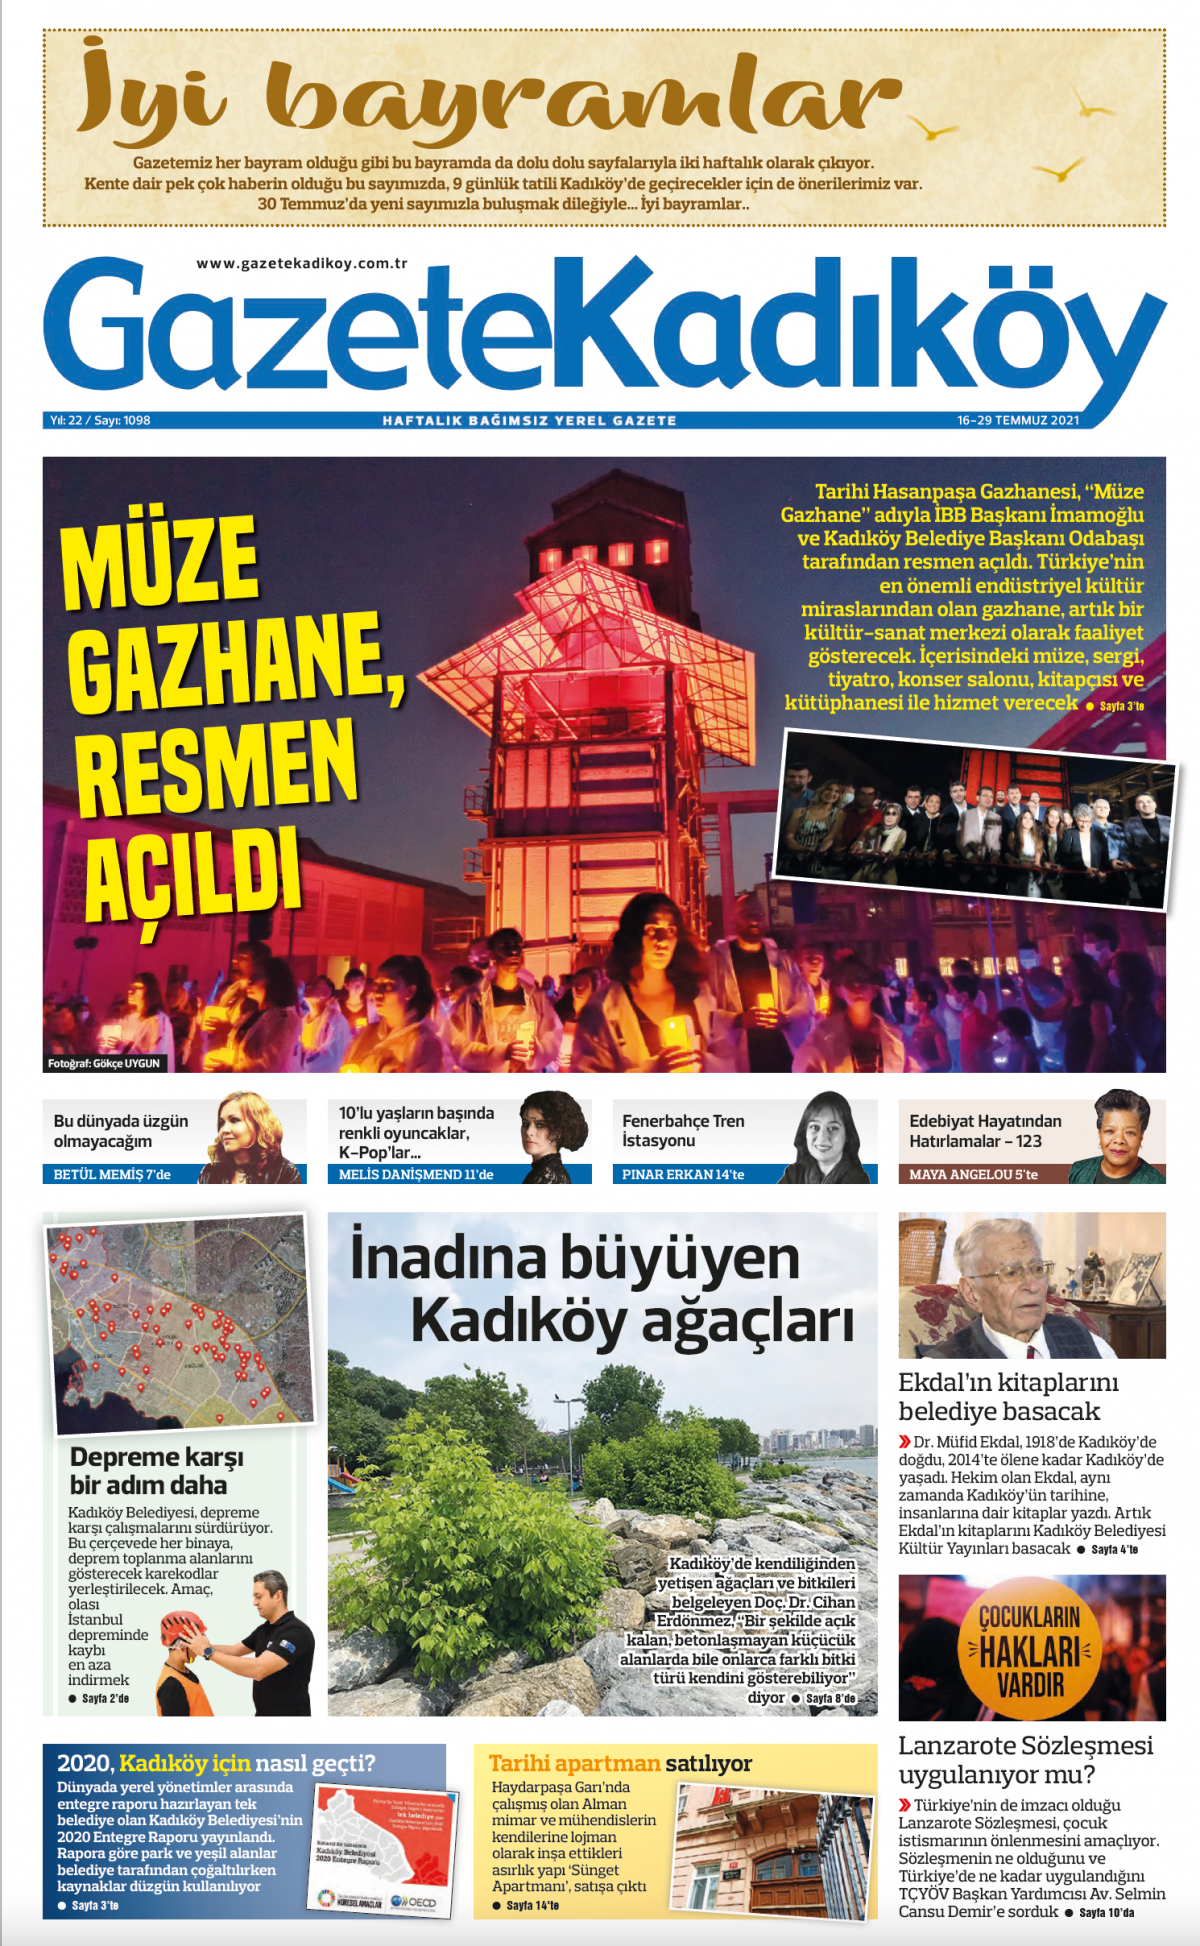 Gazete Kadıköy - 1098. Sayı